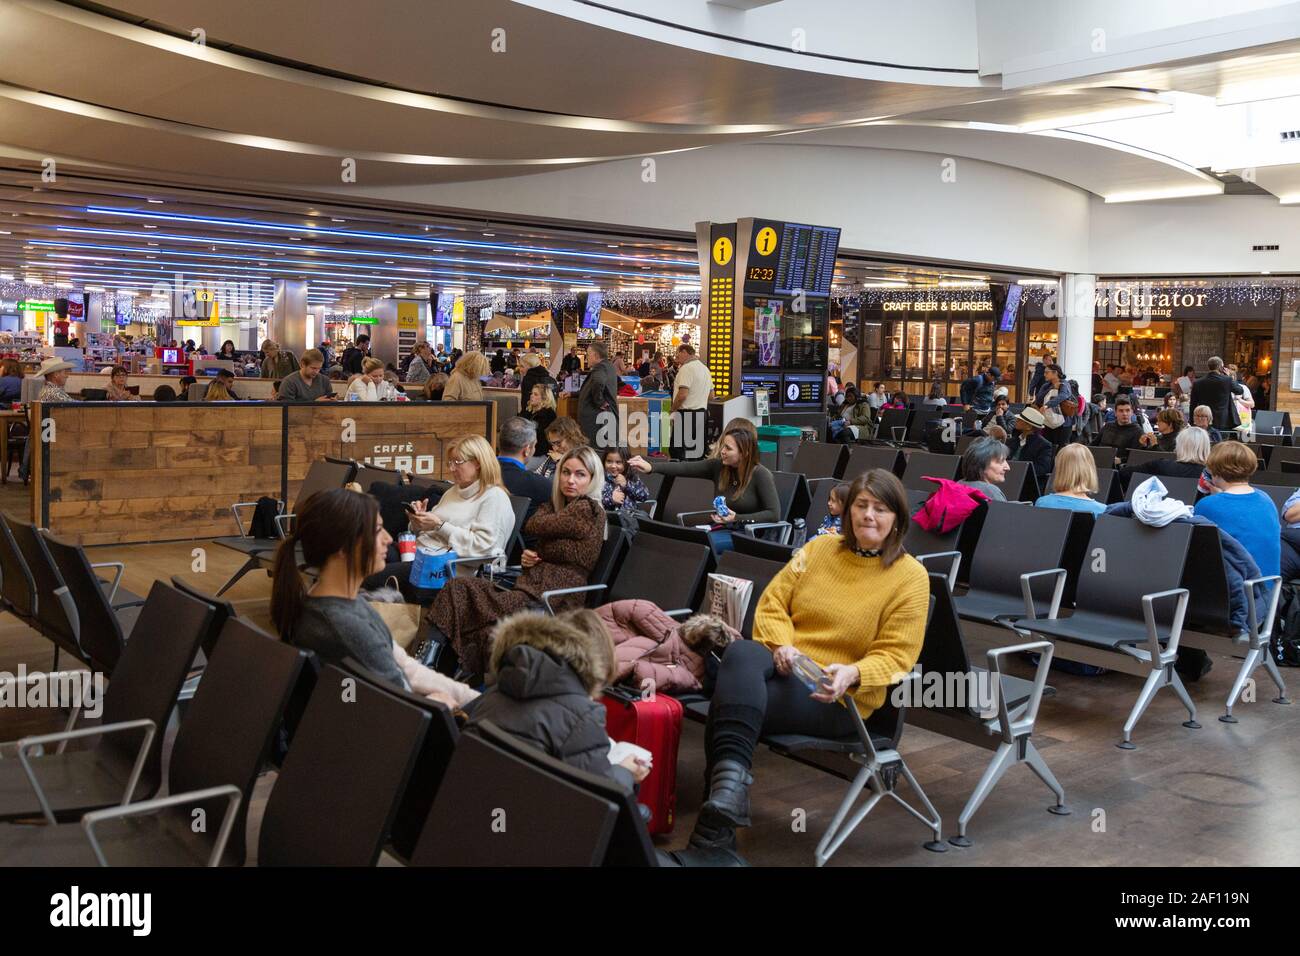 Flughafen Heathrow London UK; Klemme 3 Innenraum; Passagiere warten auf Ihre Flüge, Heathrow London UK Stockfoto